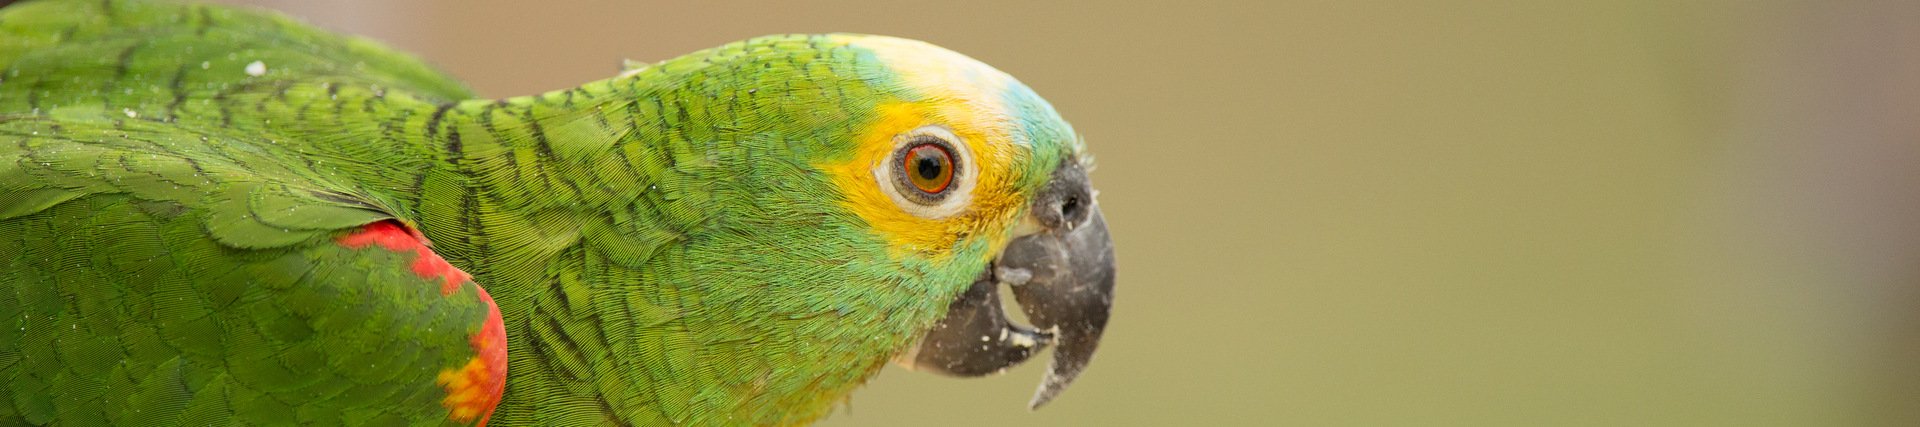 Bird, the Pantanal